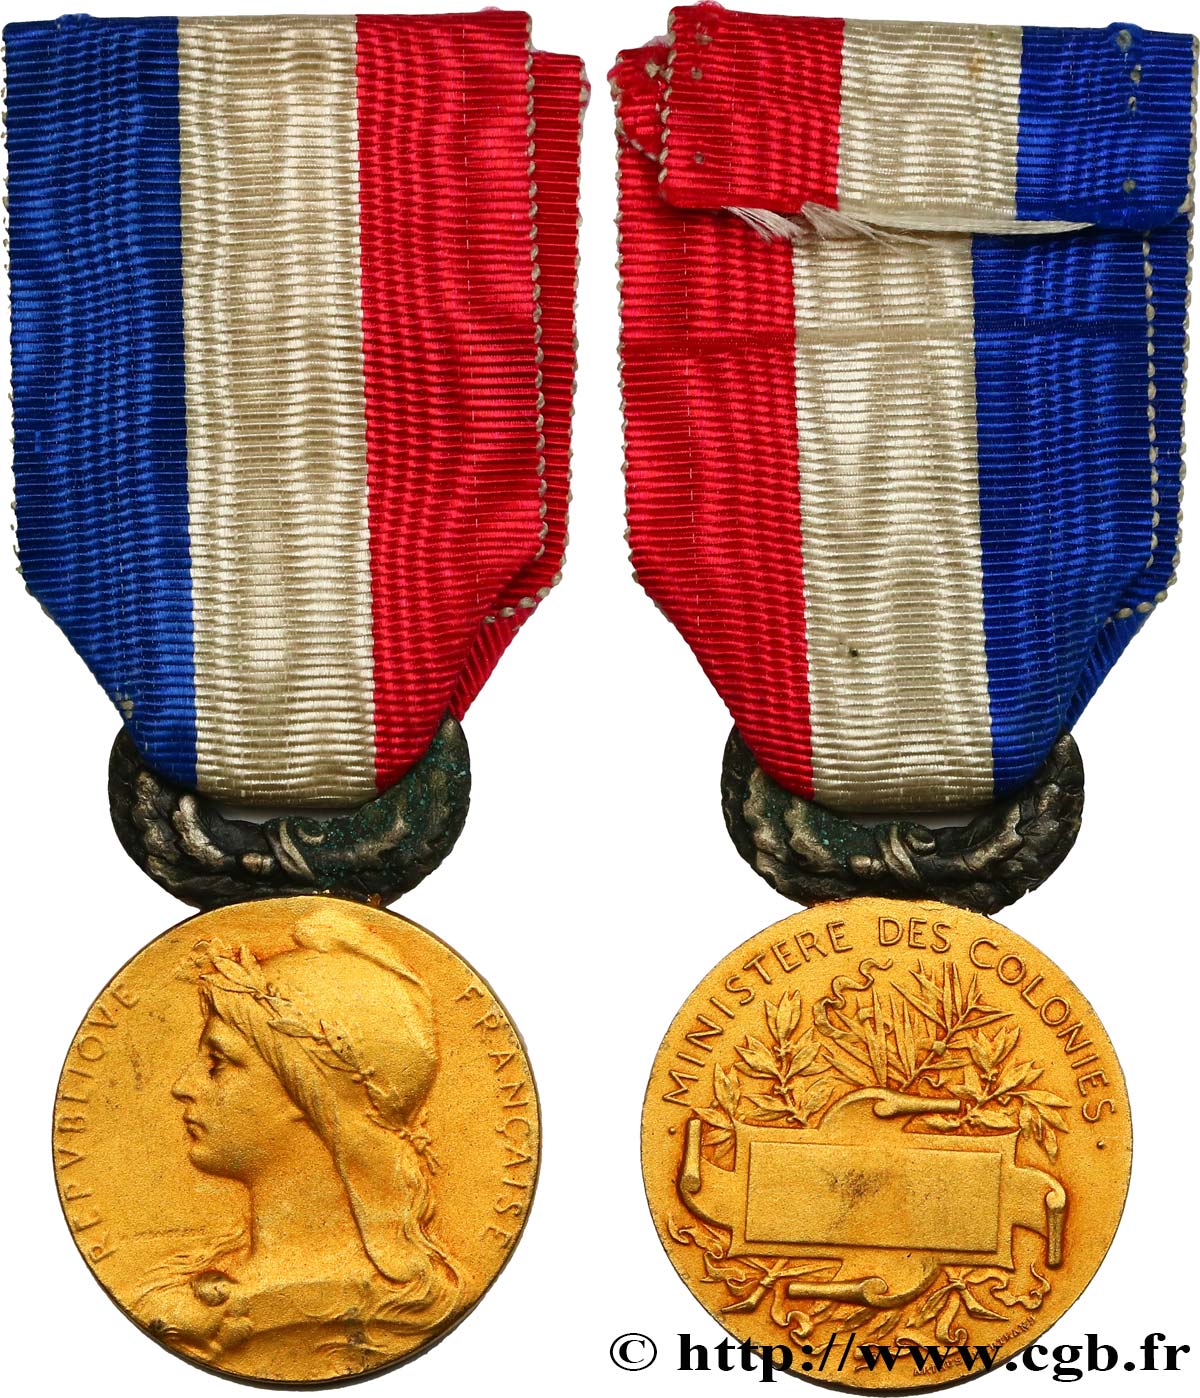 III REPUBLIC Médaille du ministère des colonies AU